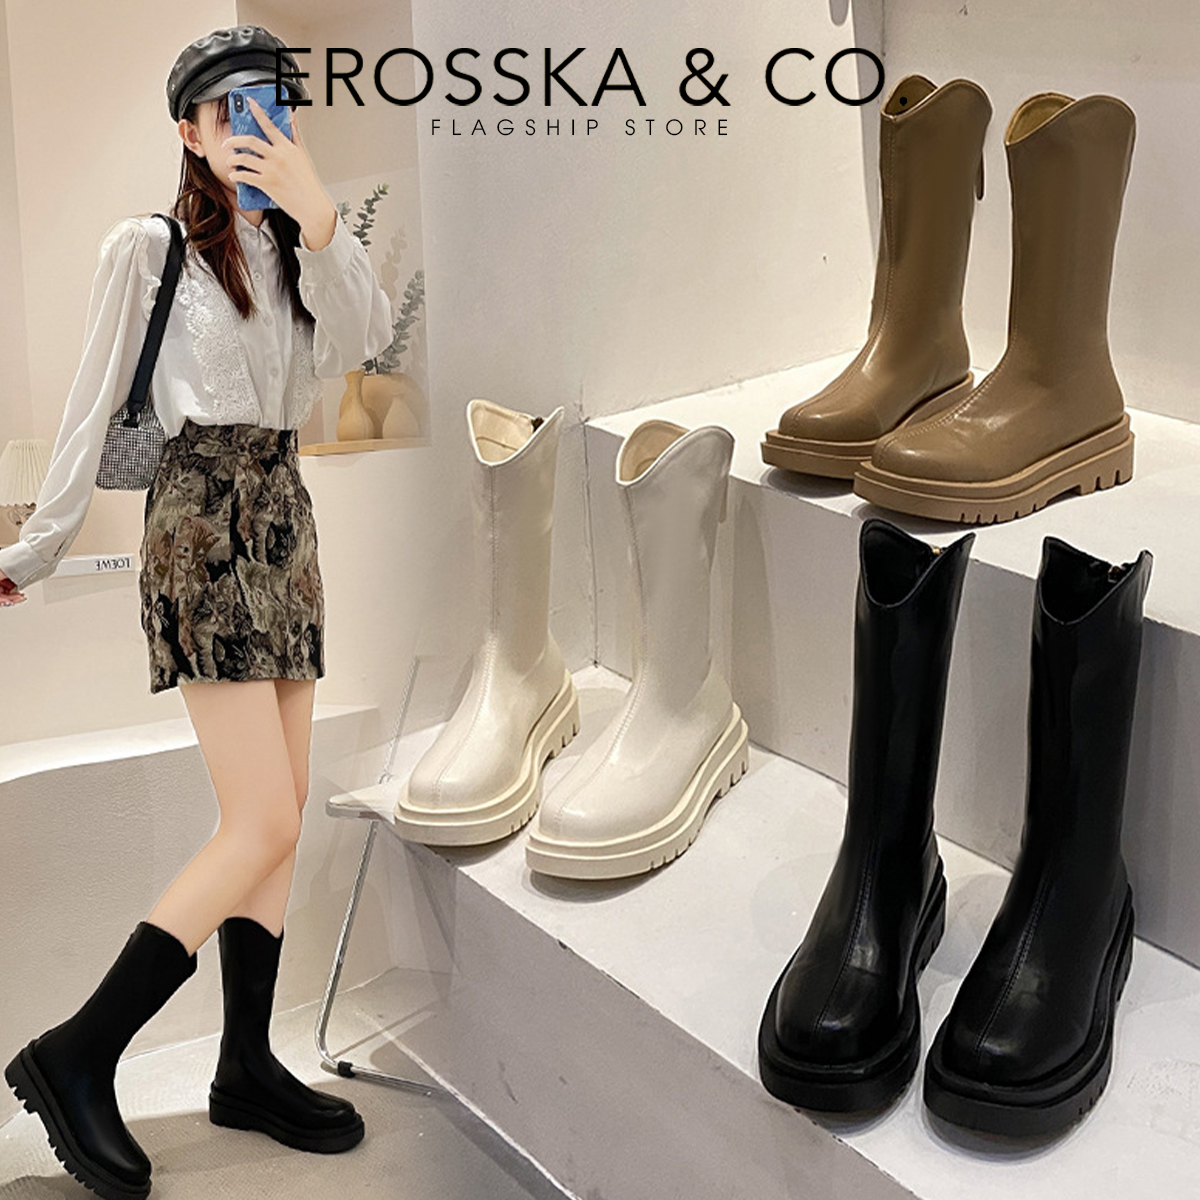 Erosska - Giày boot cổ cao mũi tròn có khoá kéo phong cách cá tính cao 5cm - GB009